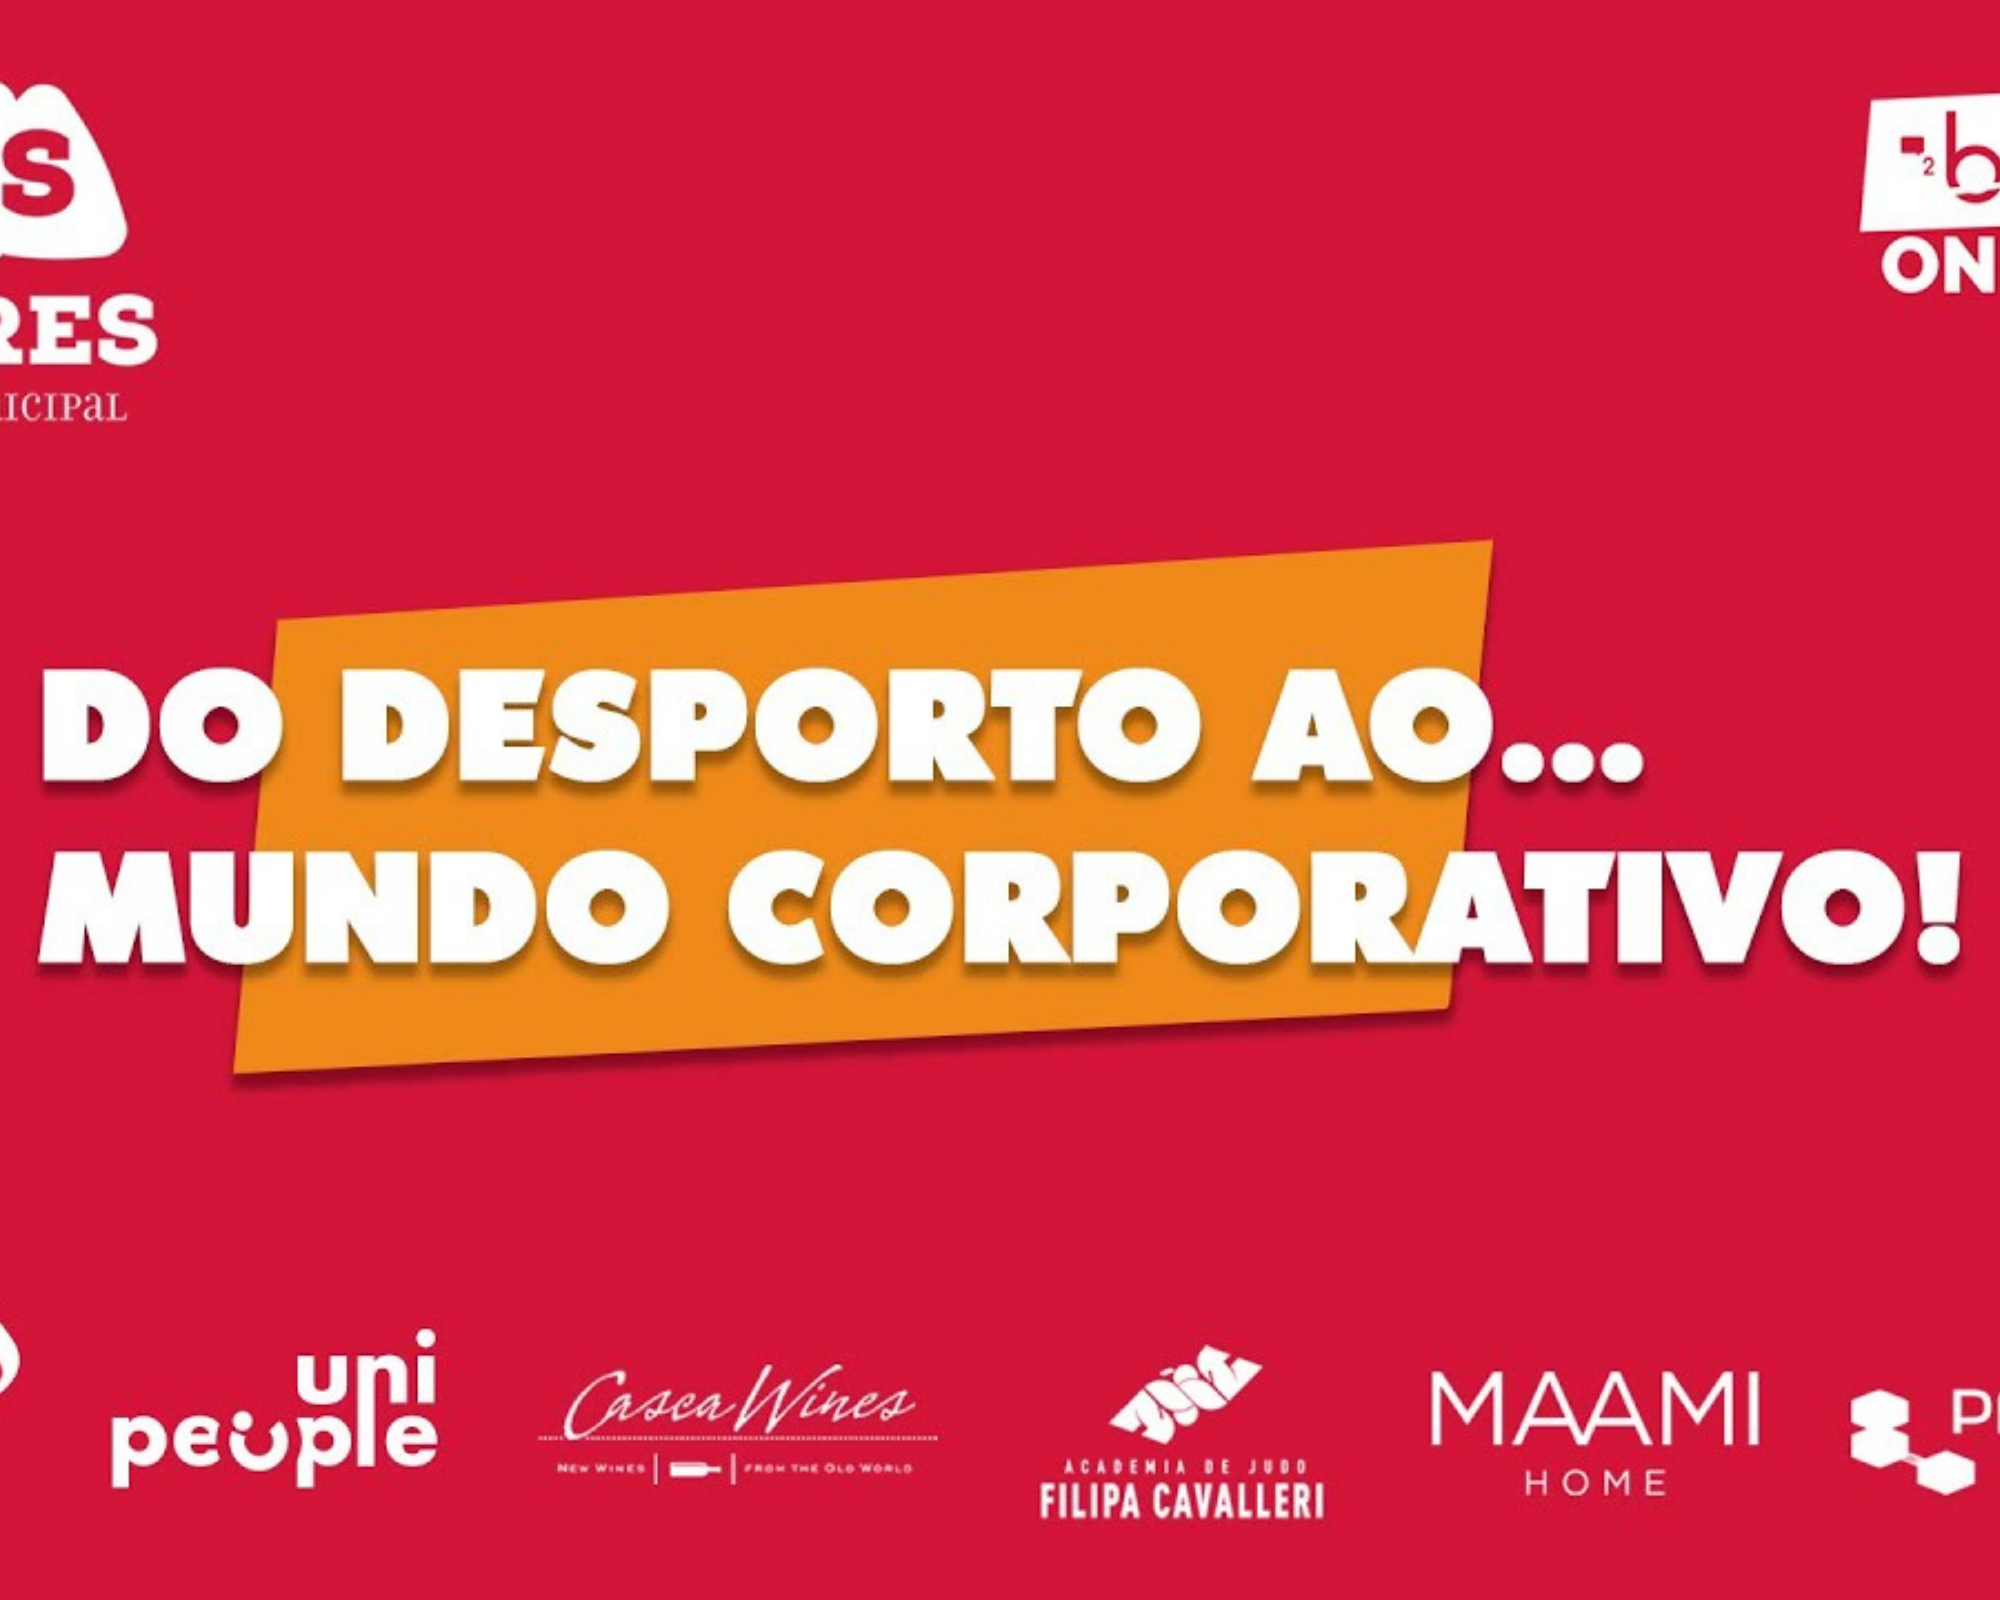 André Sousa Sequeira na conferência “Do Desporto ao… Mundo Corporativo!”